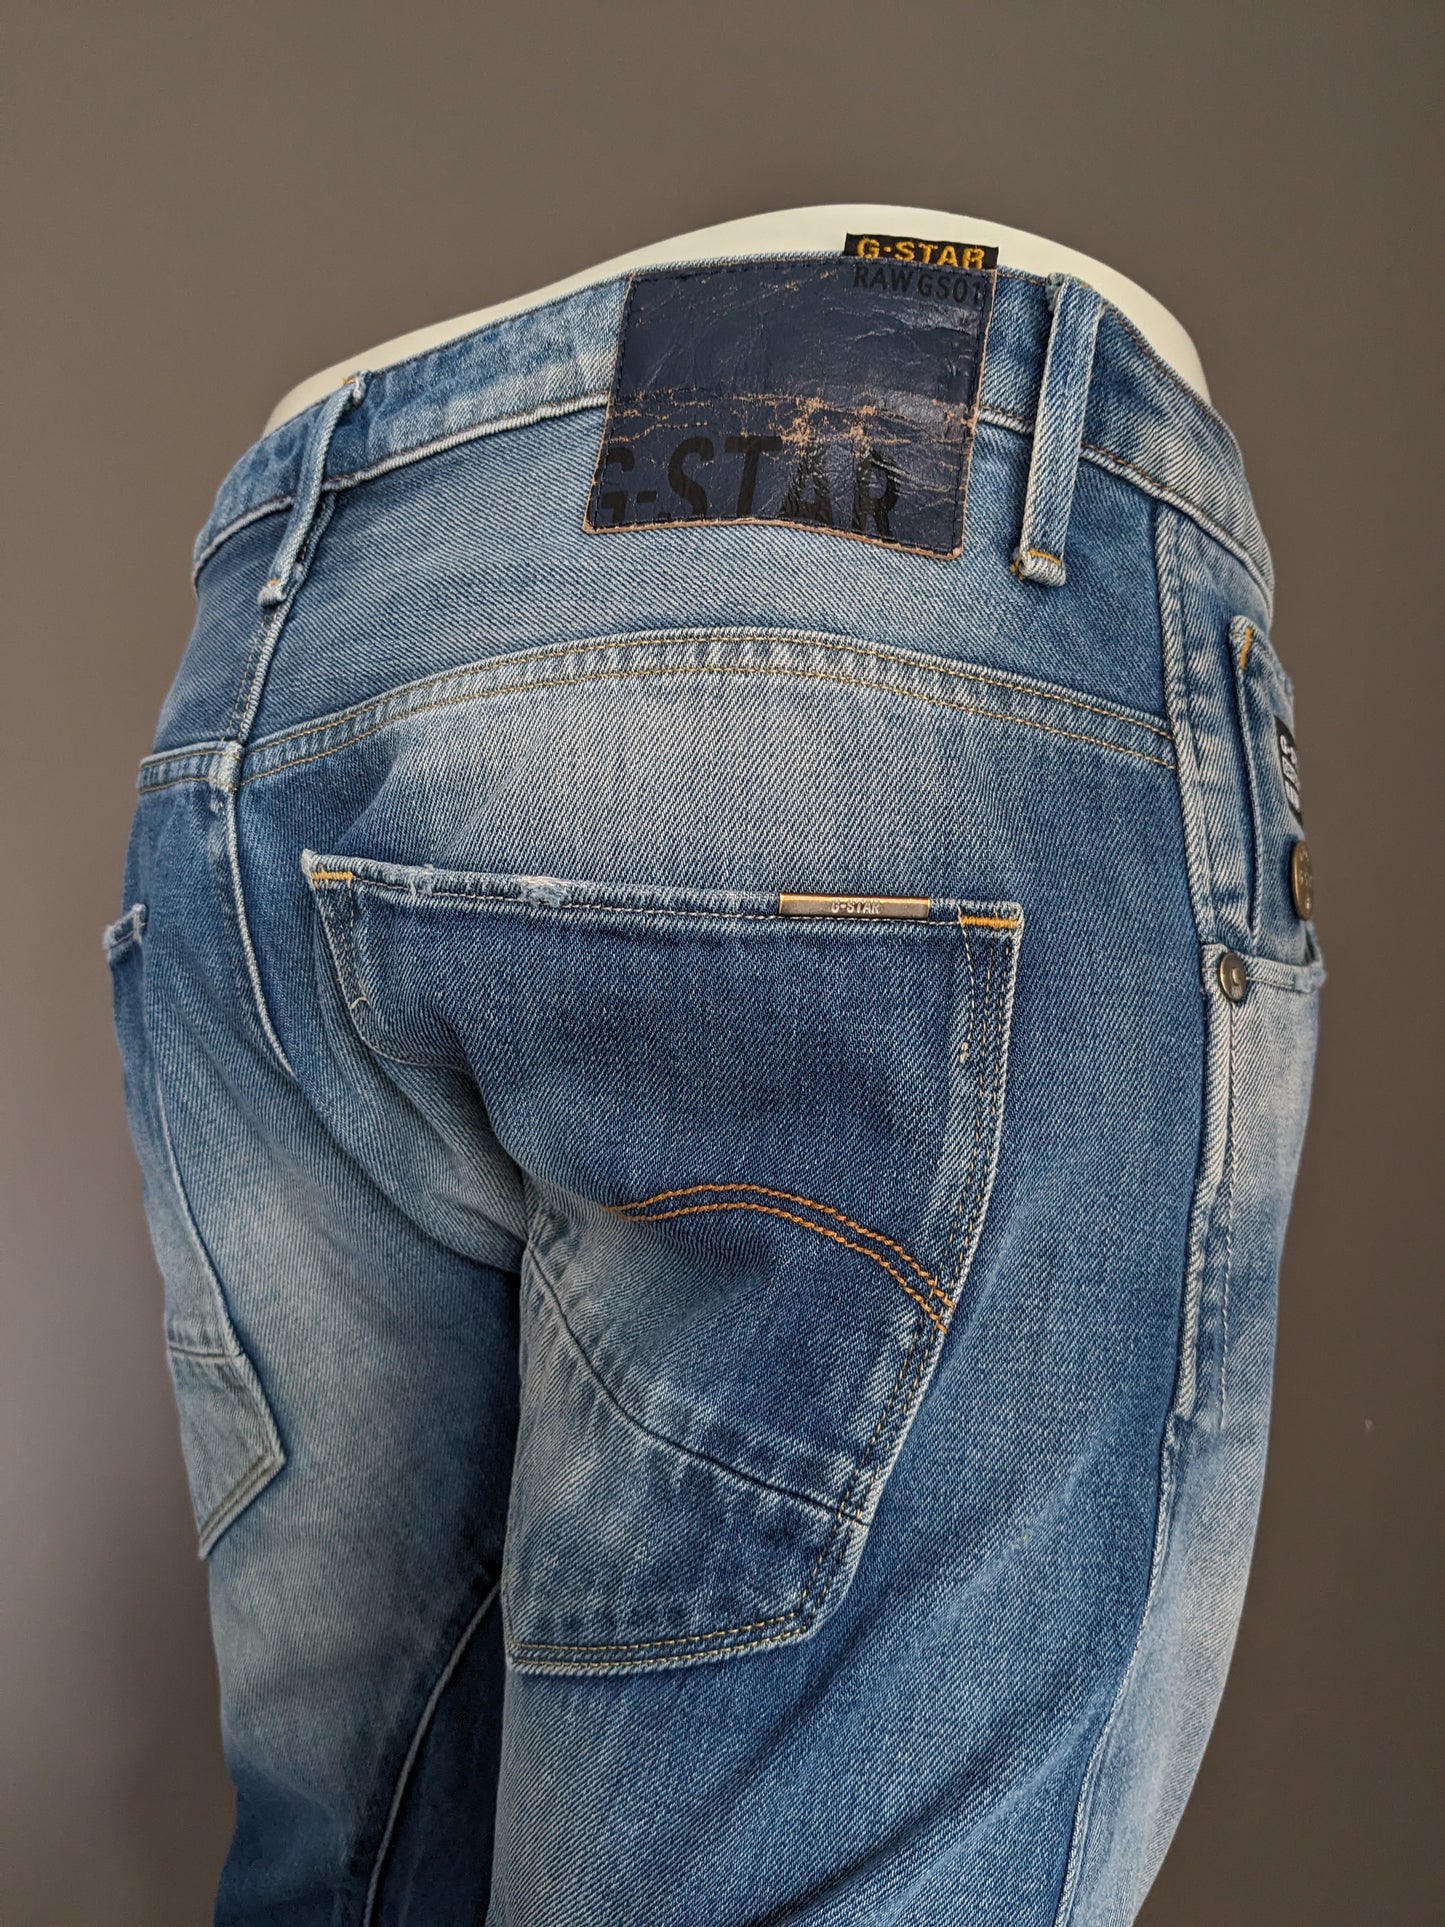 Jeans GSTAR RAW. Colorato azzurro. Taglia W33 - L32.